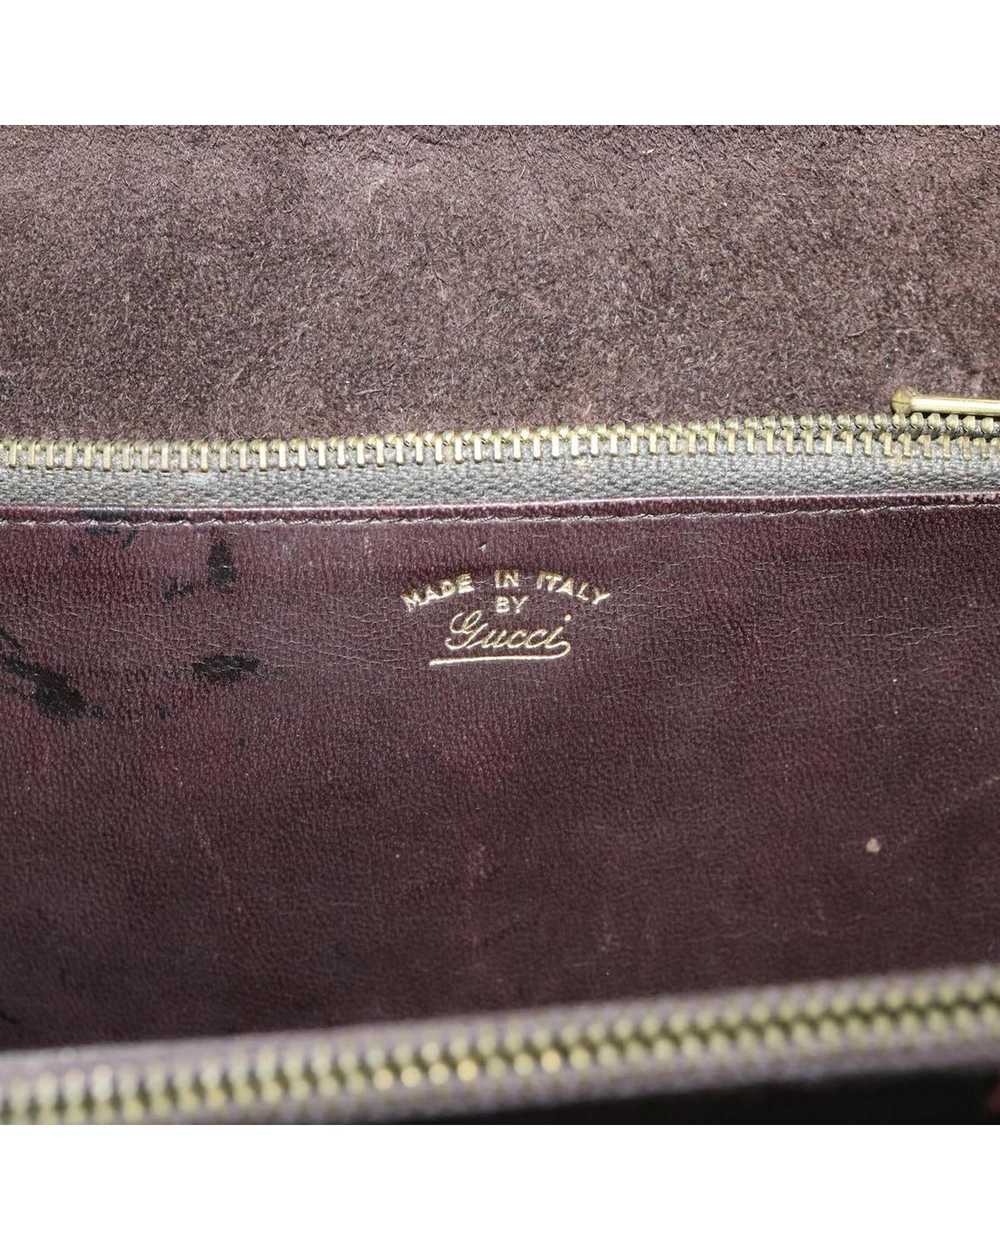 Gucci Suede Turn Lock Shoulder Bag - image 10